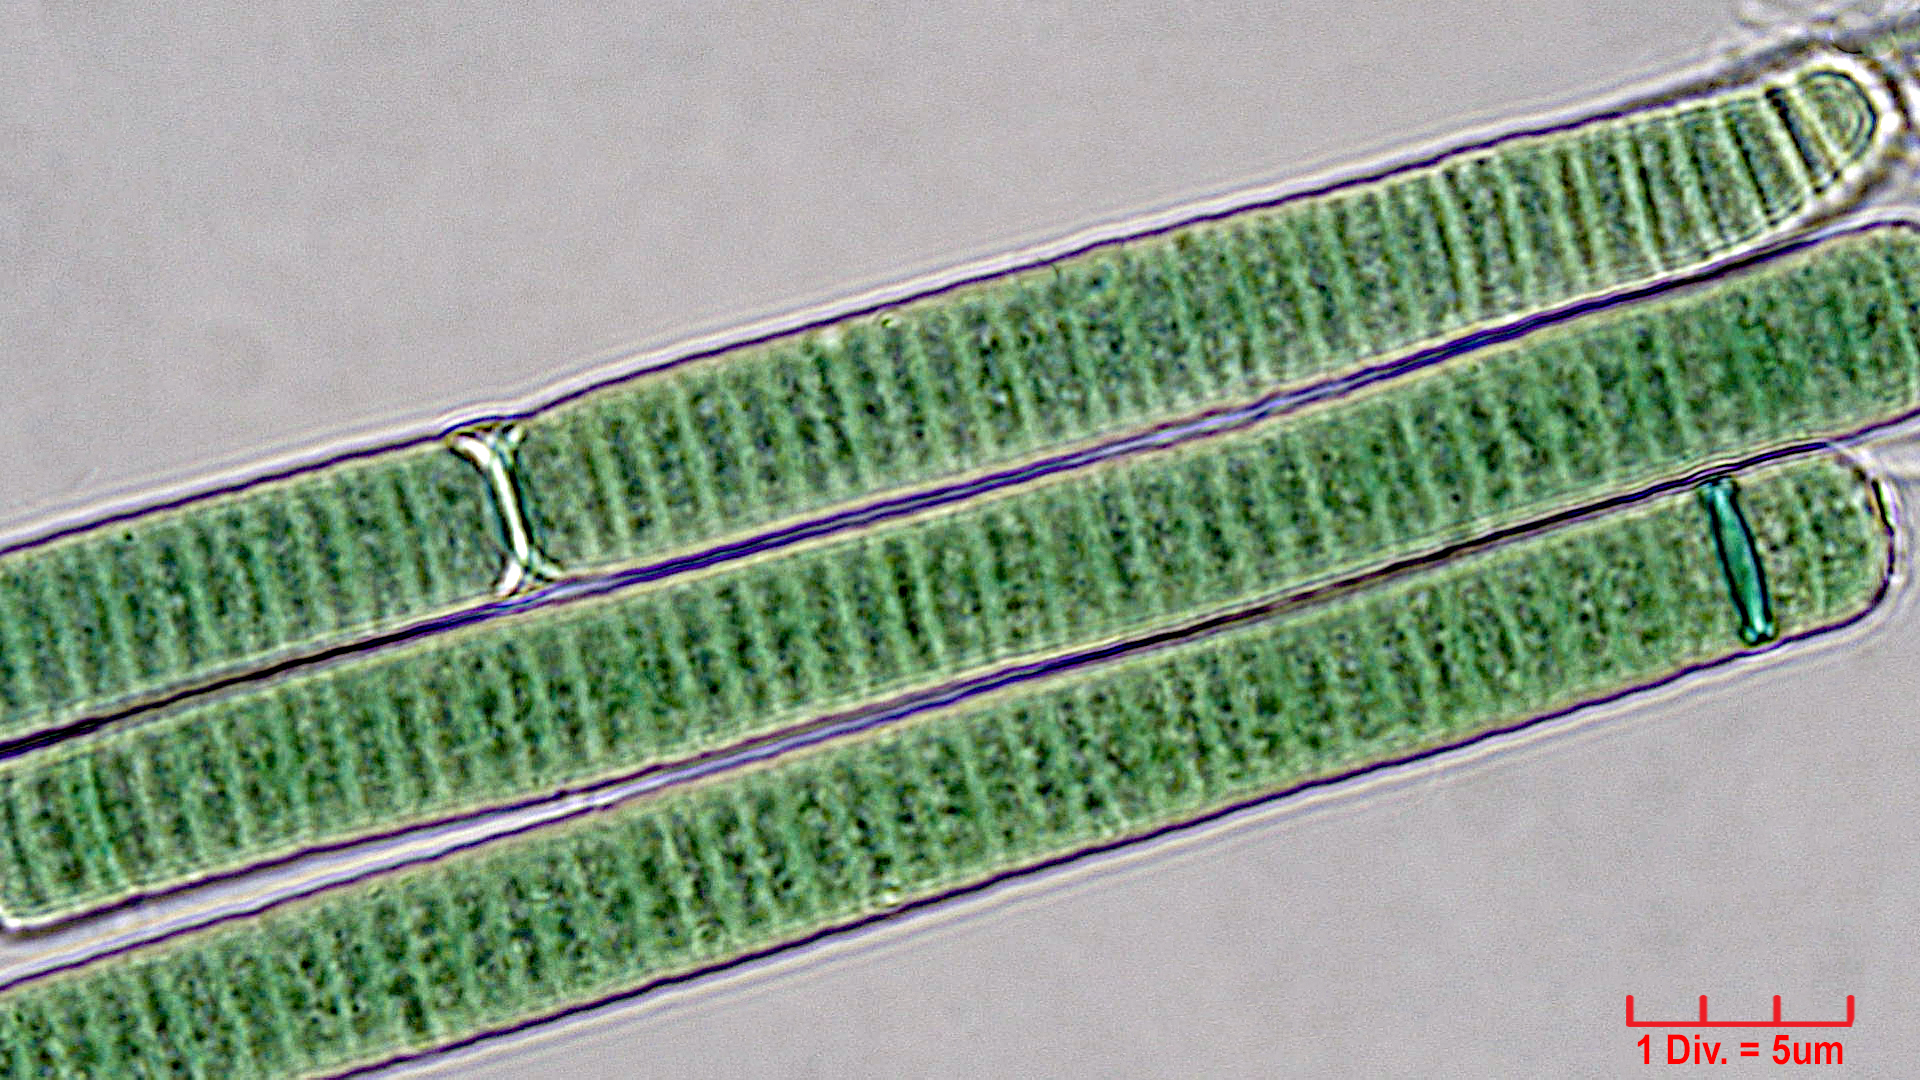 ./././Cyanobacteria/Oscillatoriales/Oscillatoriaceae/Oscillatoria/curviceps/oscillatoria-curviceps-181.jpg